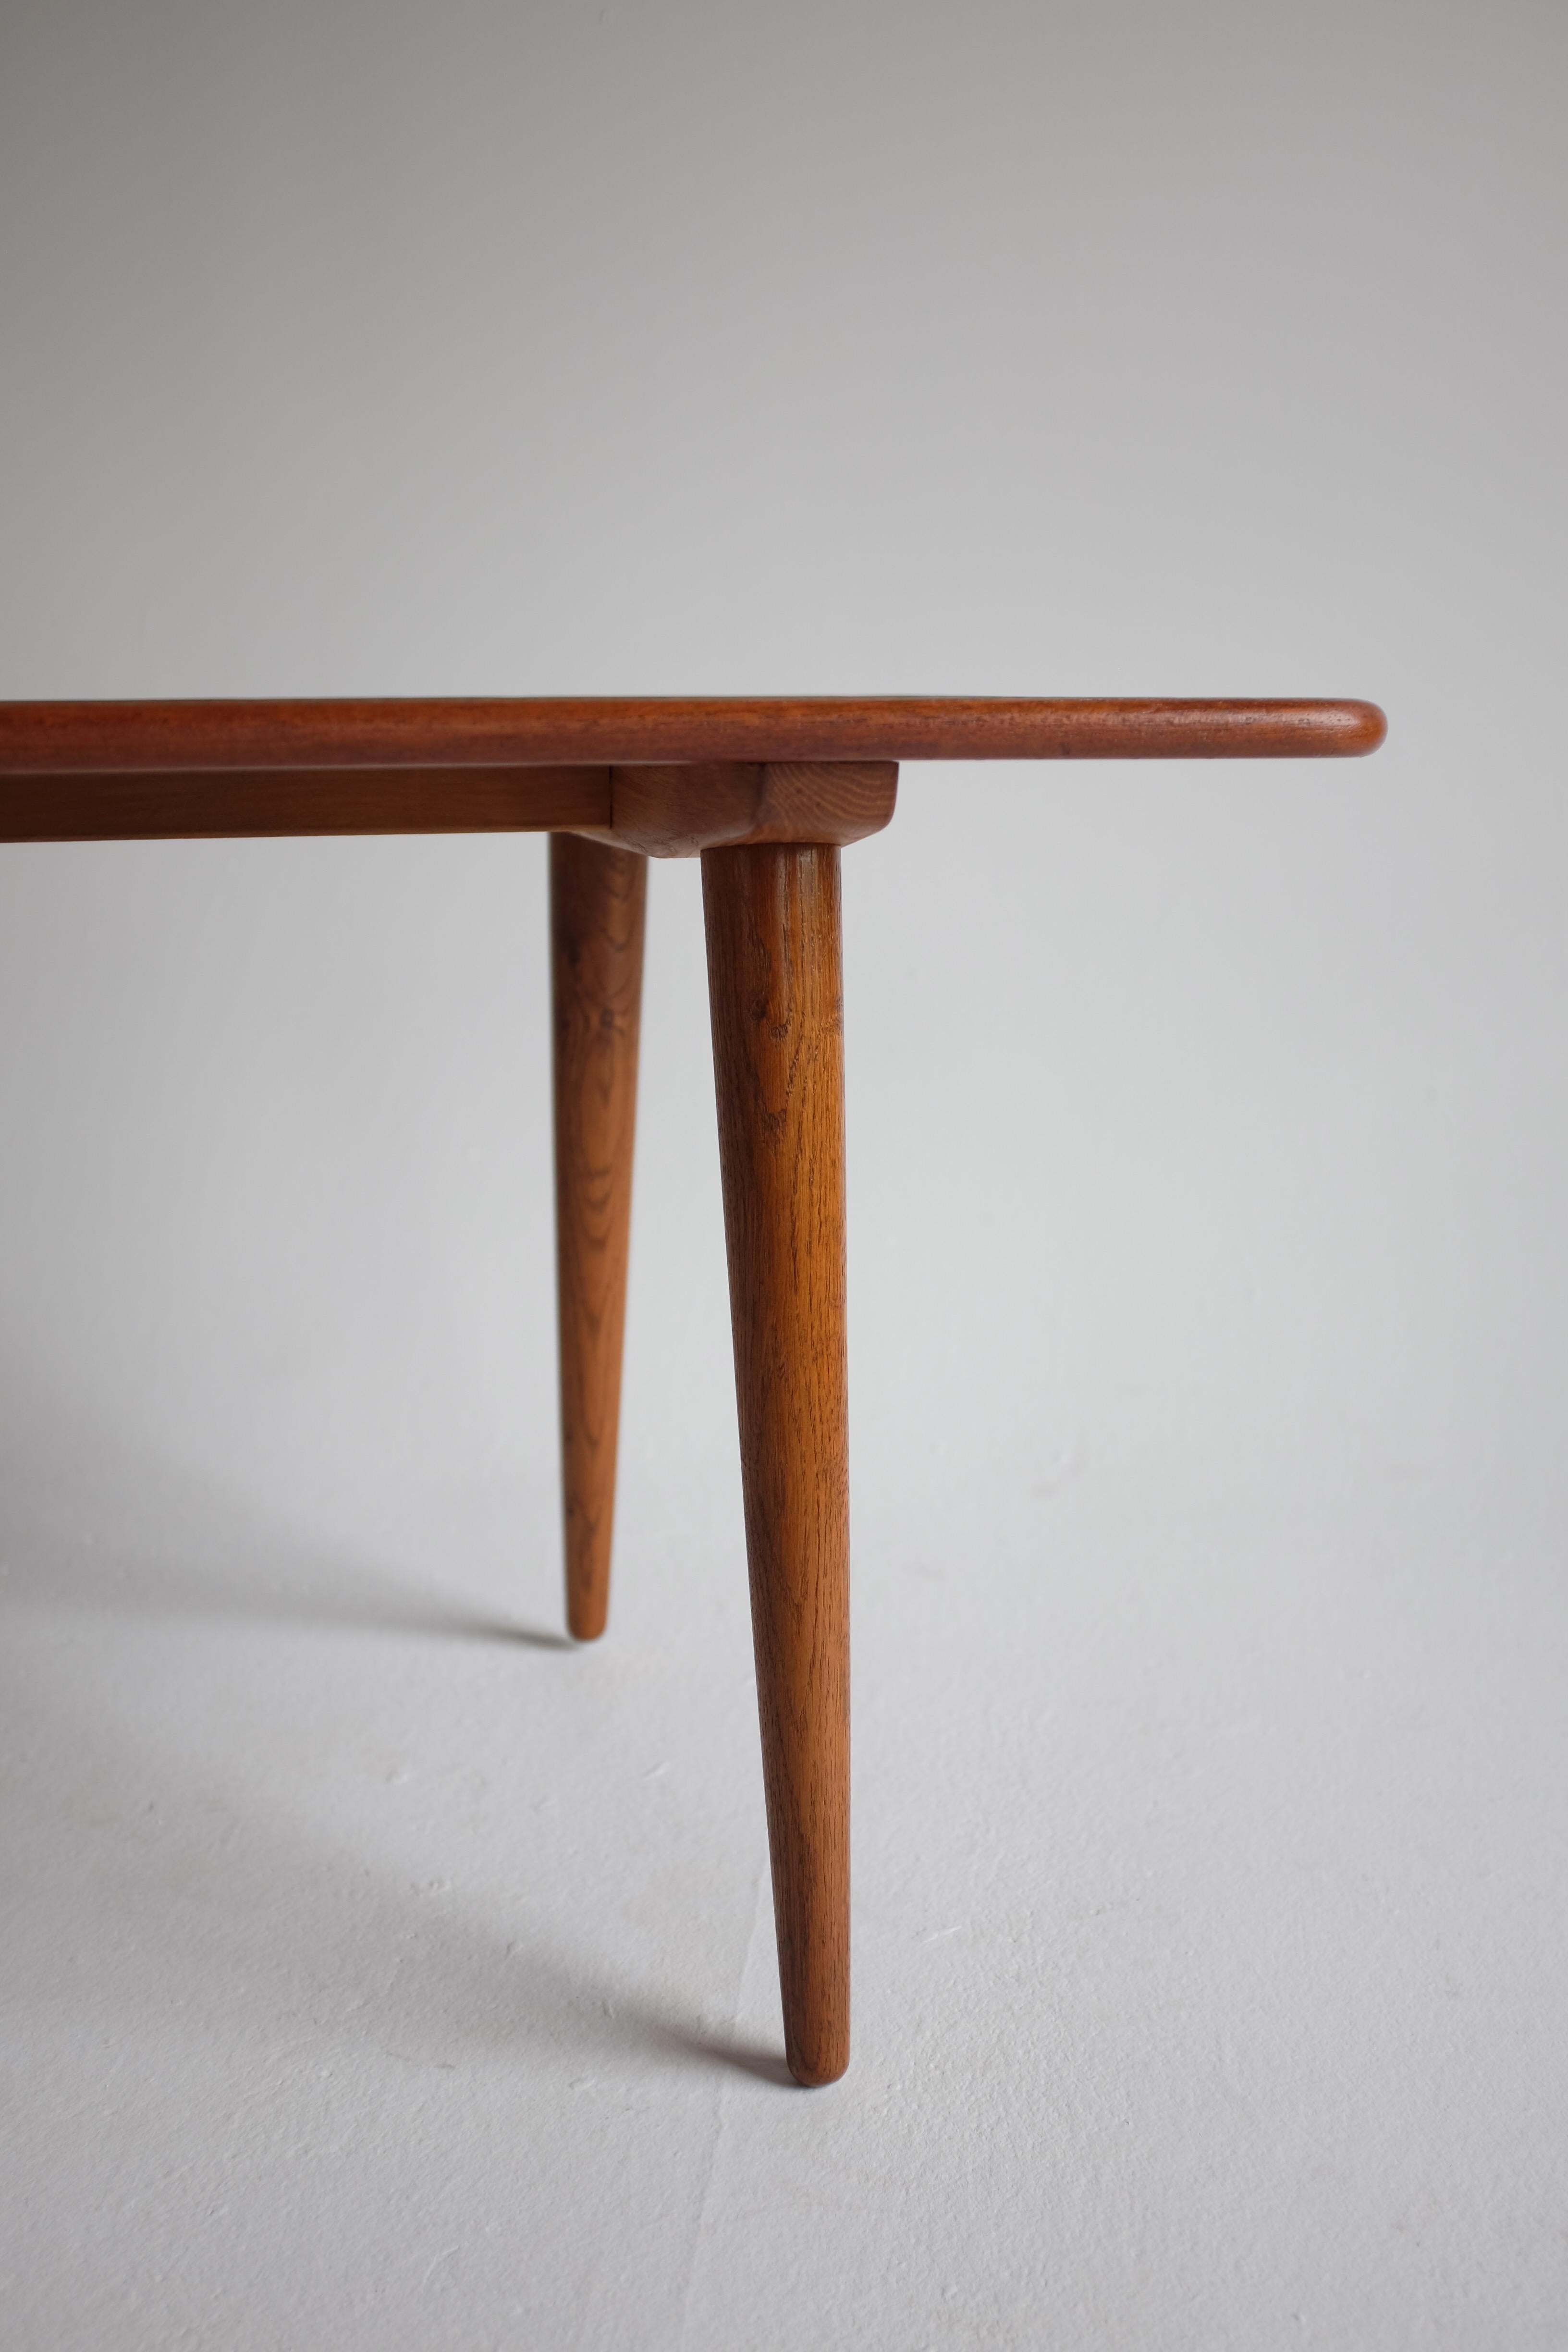 Ikonischer Couchtisch T-11 von Hans Wegner für Andreas Tuck, Dänemark. Dieses Stück hat eine Platte aus Teakholz mit Beinen aus Eichenholz und ist darunter markiert. Der 1954 entworfene und in den 1950er Jahren hergestellte Stuhl ist ein klassisches